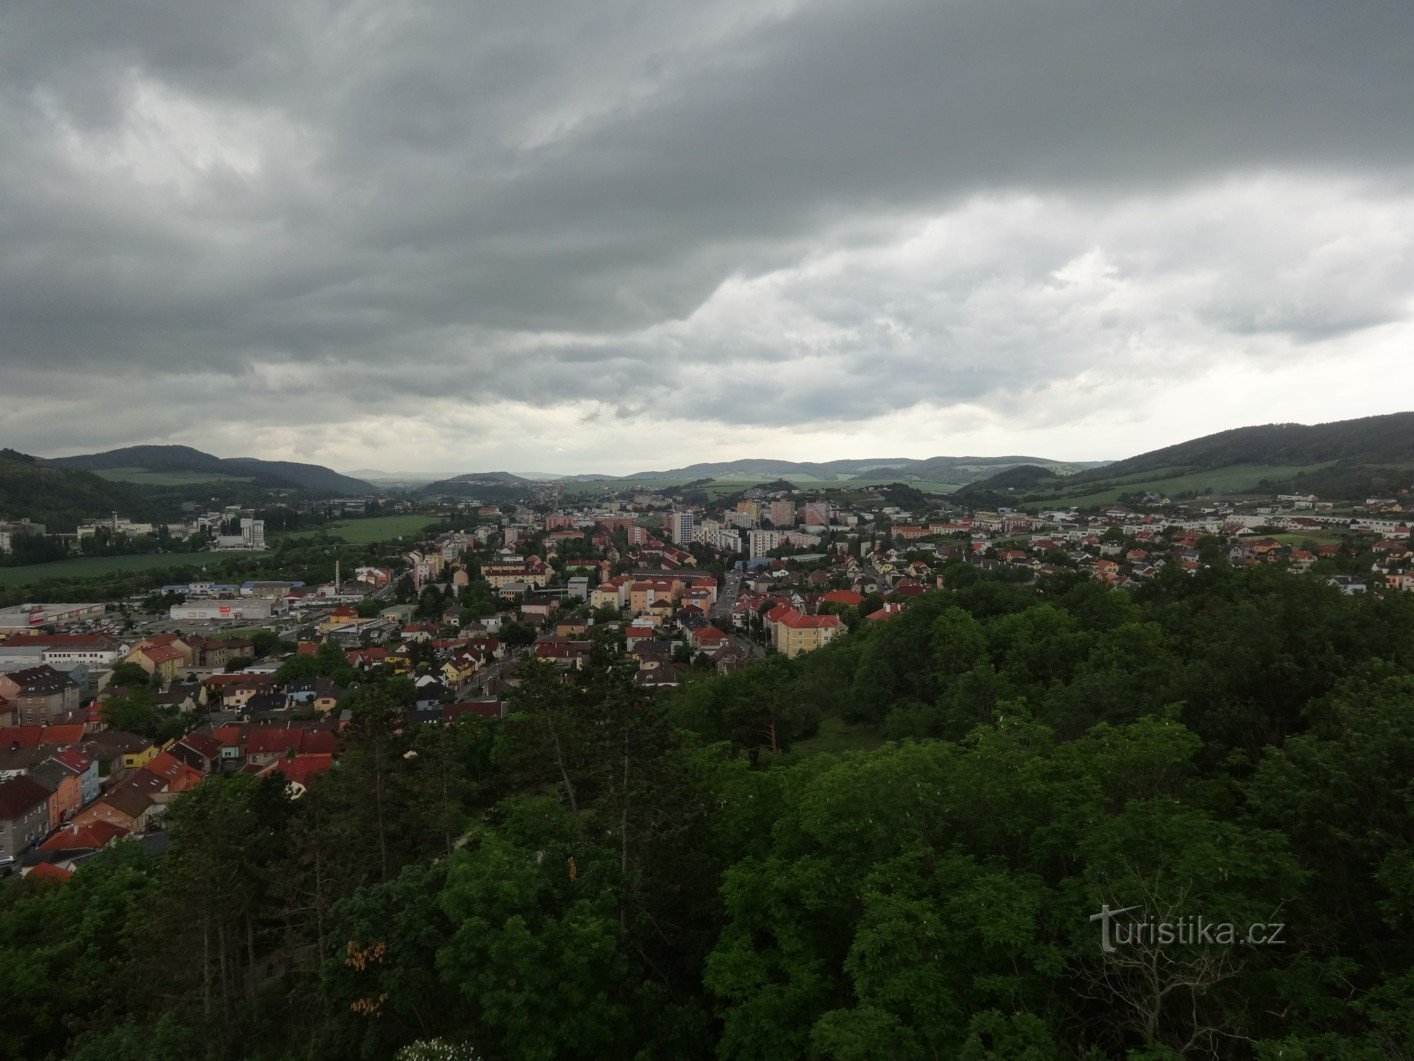 Συγκεκριμένος πύργος παρατήρησης στο Městská hora στο Beroun